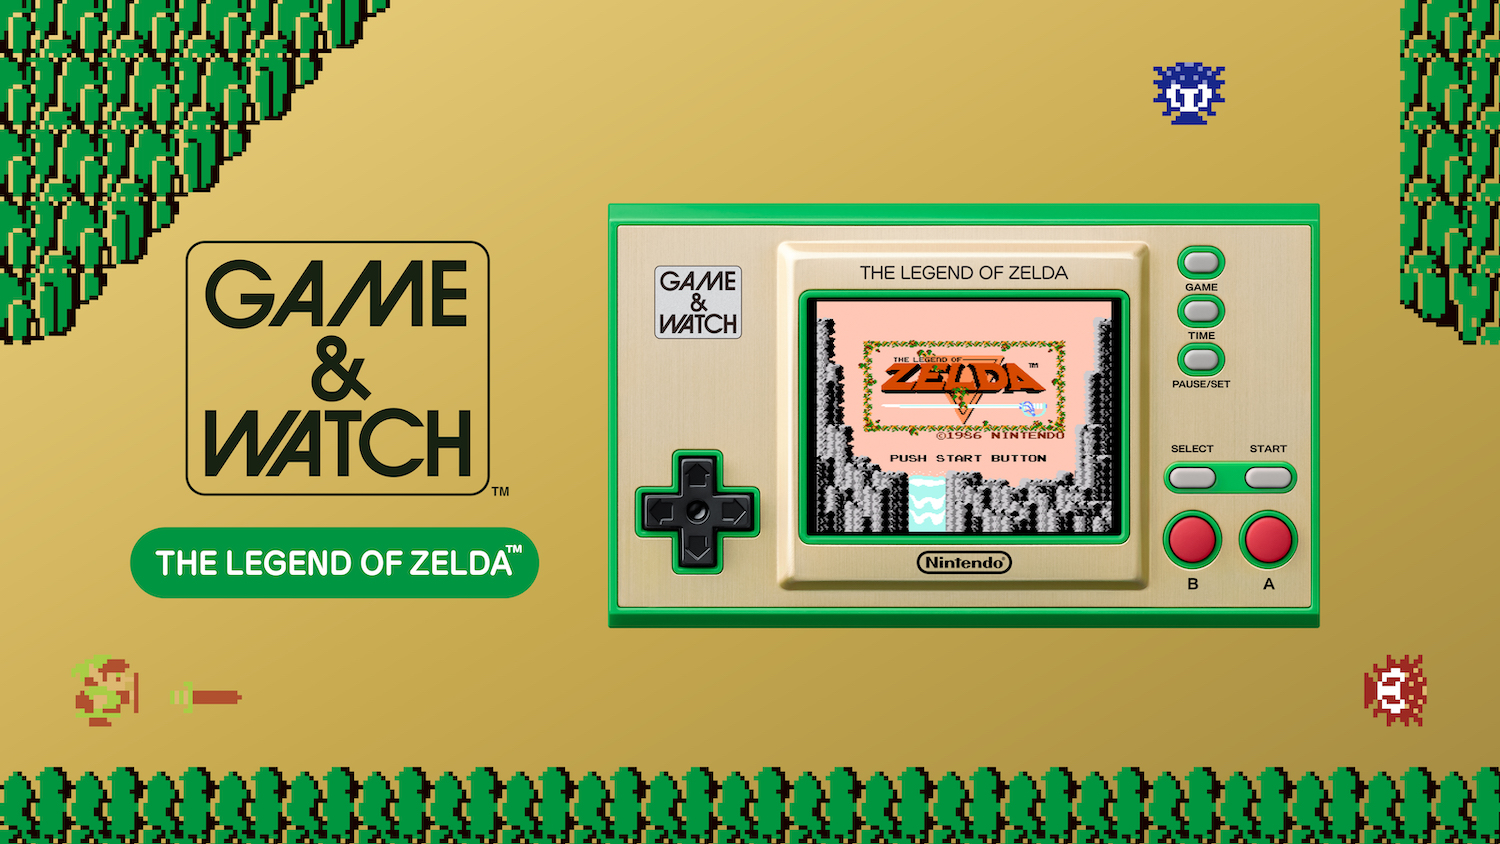 6) Game & Watch: The Legend of Zelda